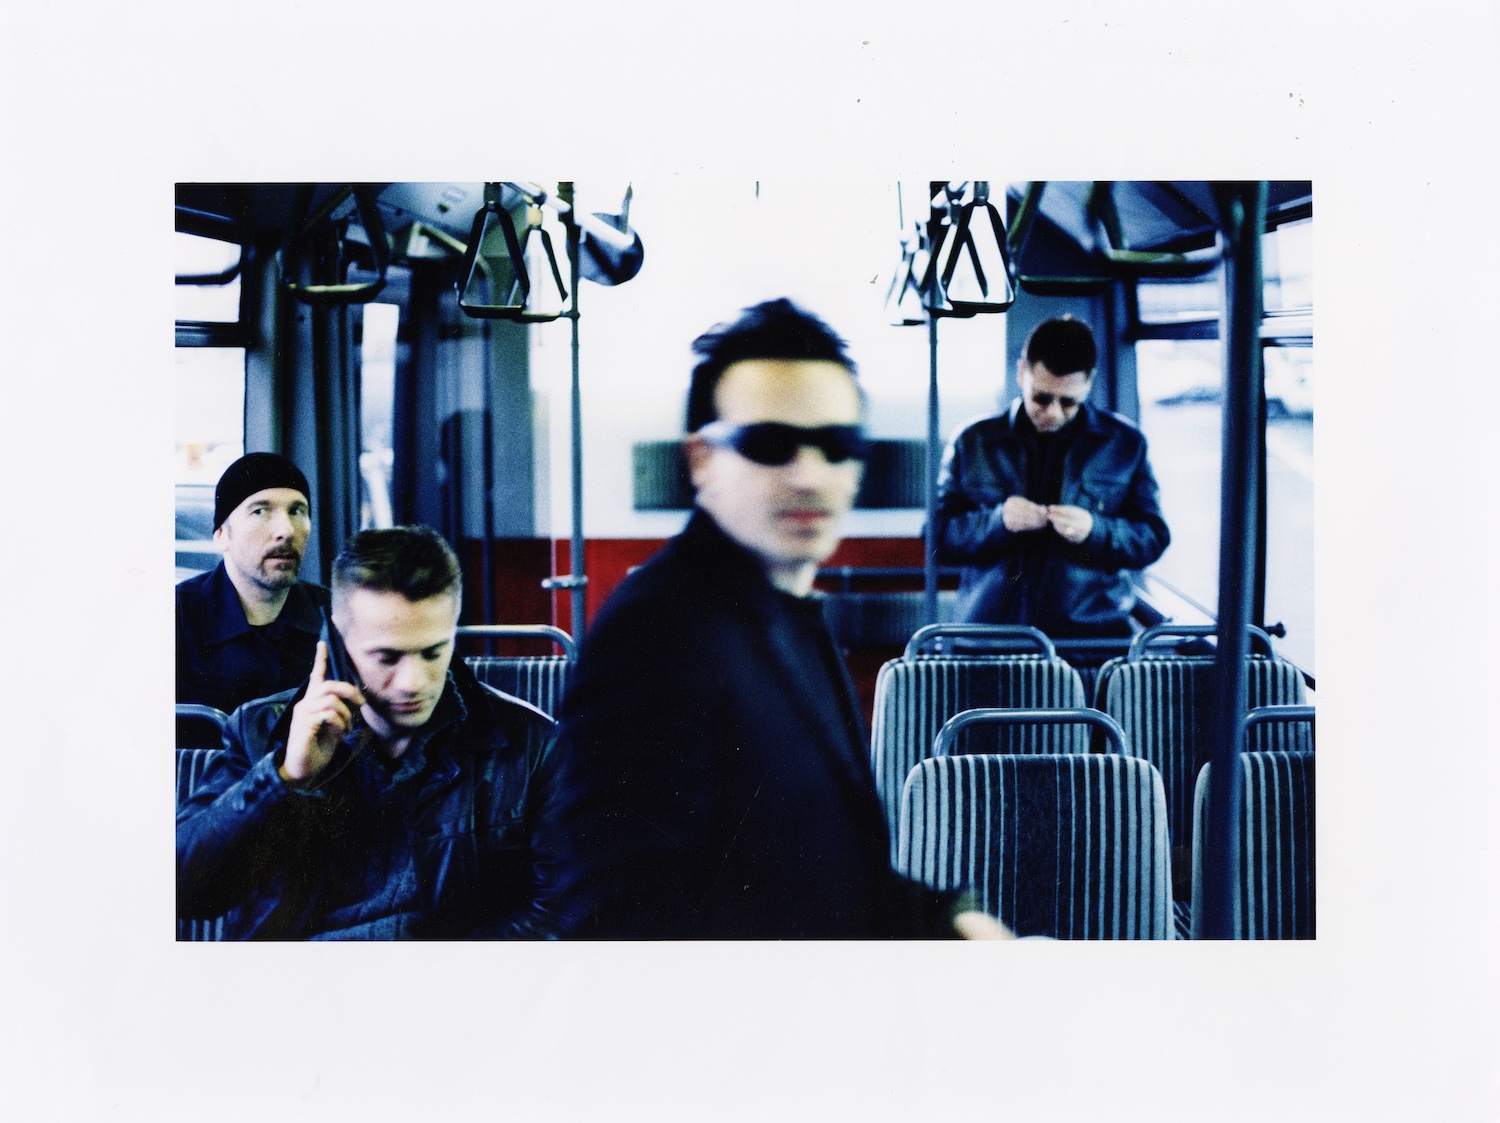 U2 オール ザット ユー キャント リーヴ ビハインド 周年記念リマスター盤が10月30日に発売 初cd化音源3曲 未発表リミックス4曲 初音源化のライブも収録 Music Guide ミュージックガイド